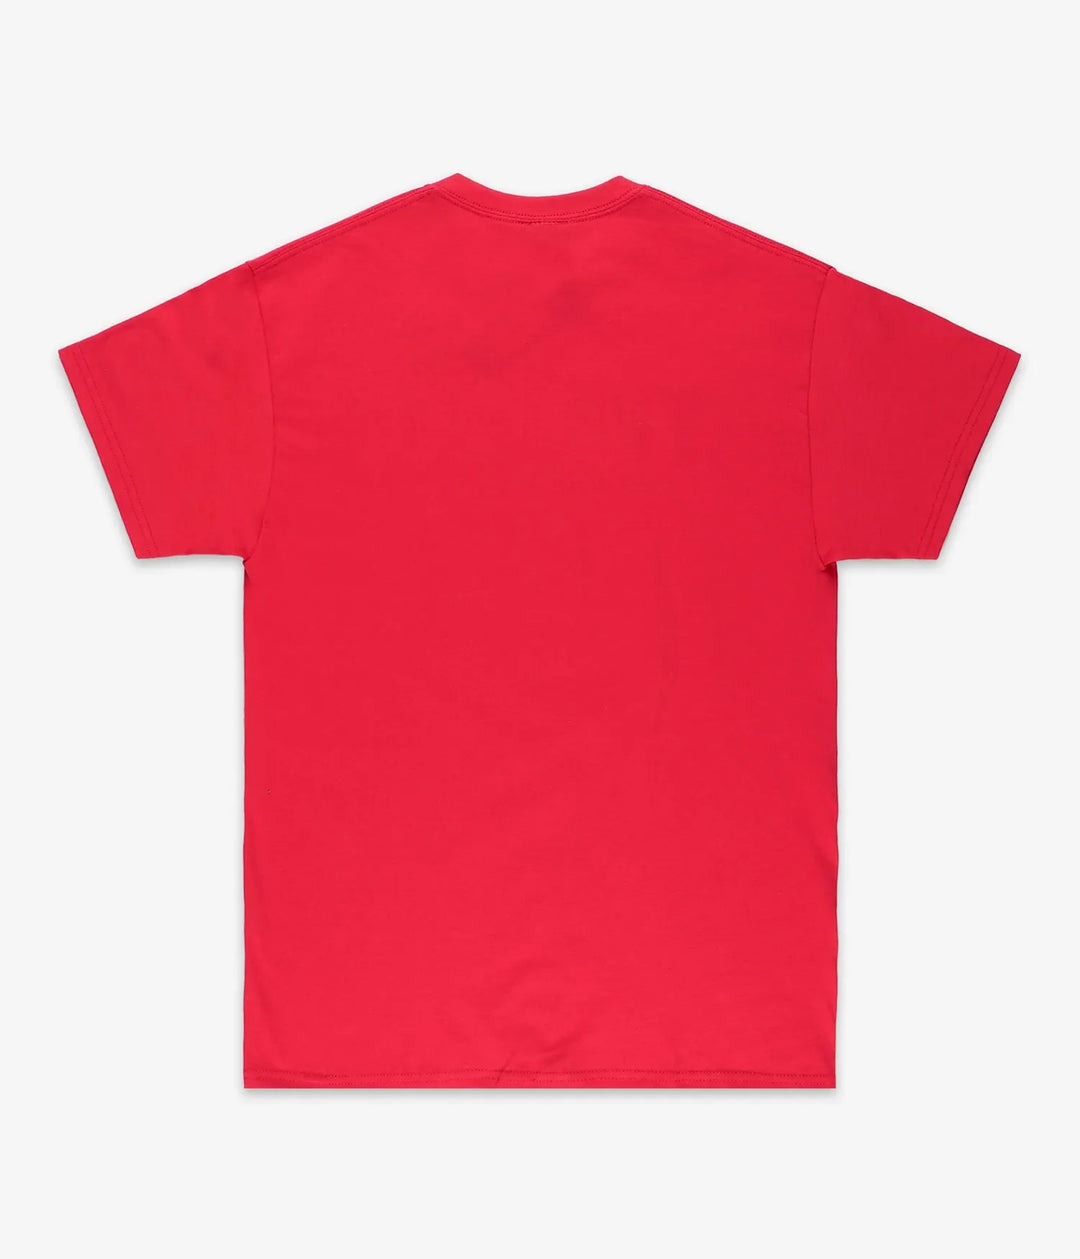 Thrasher X Baker Logo T-Shirt (Red)